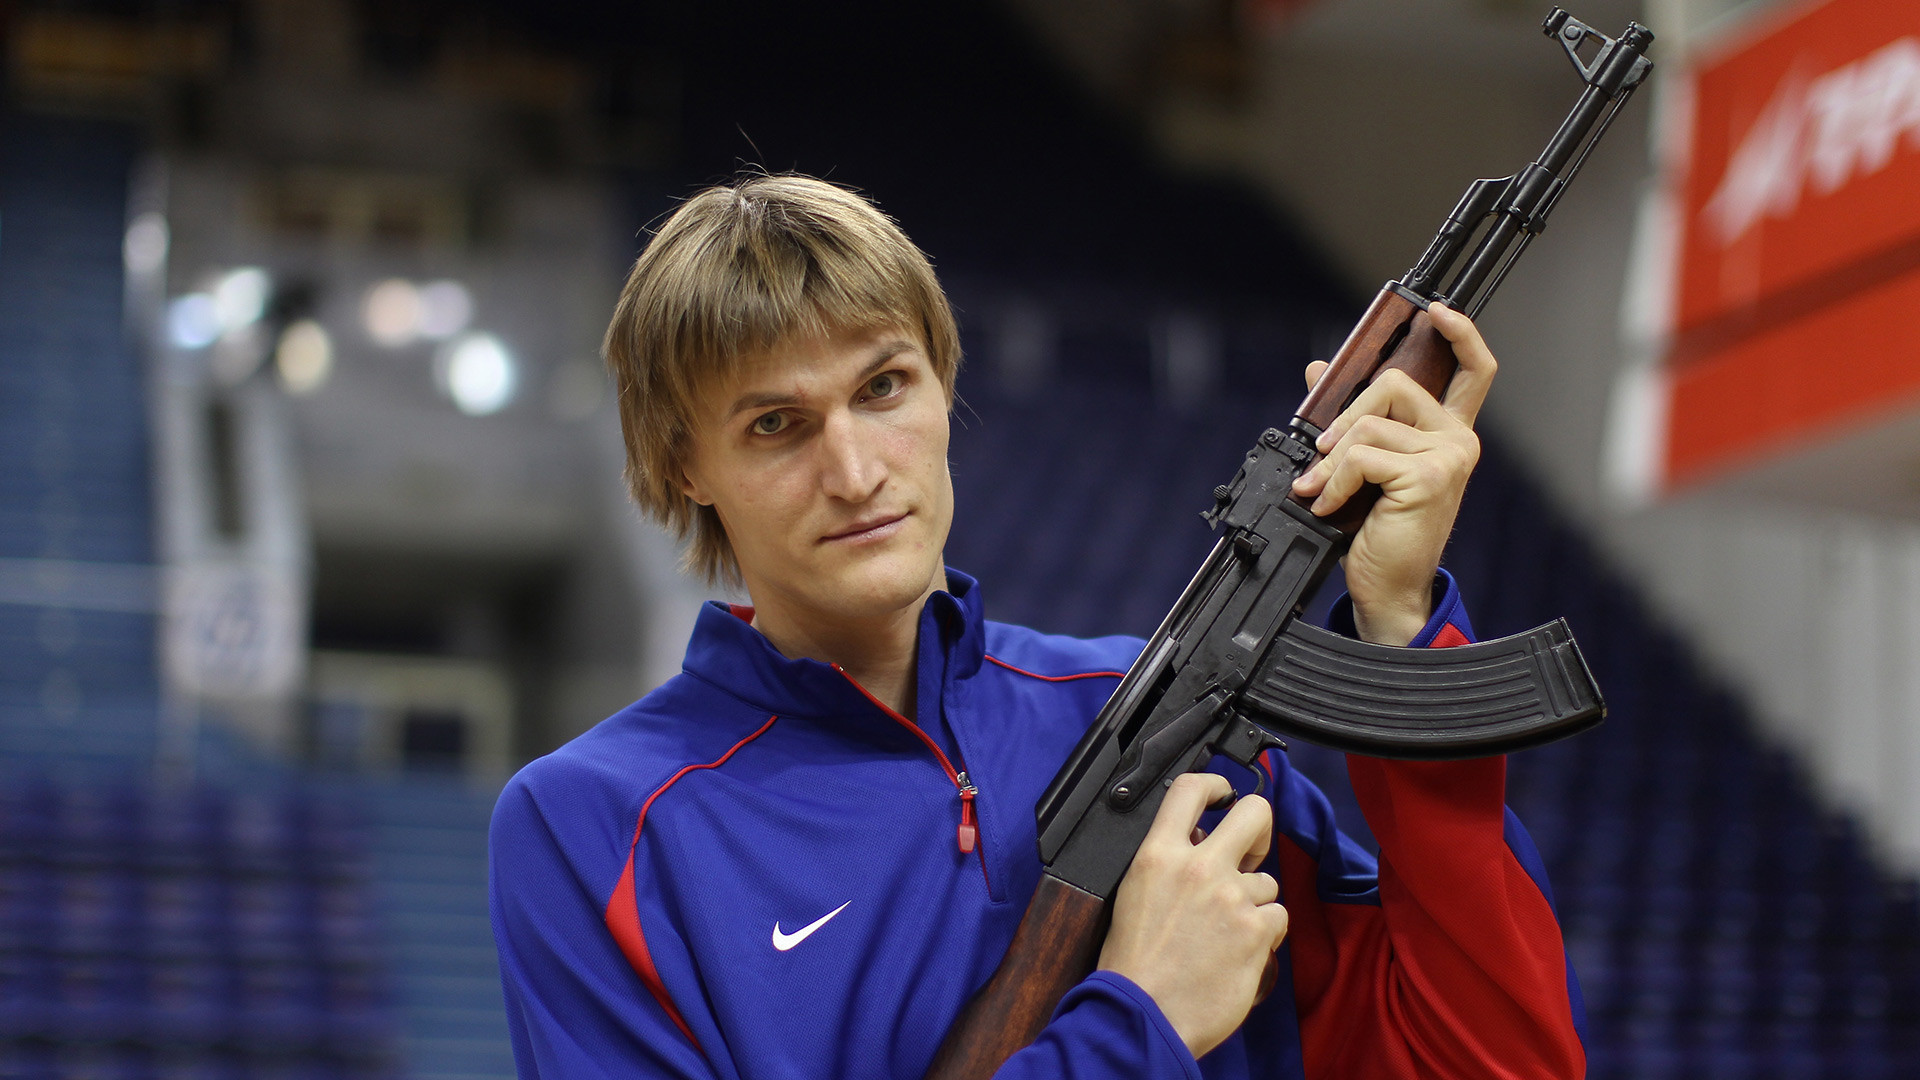 Astro do basquete Andrêi Kirilenko empunha um AK durante sessão de fotos para seu novo clube